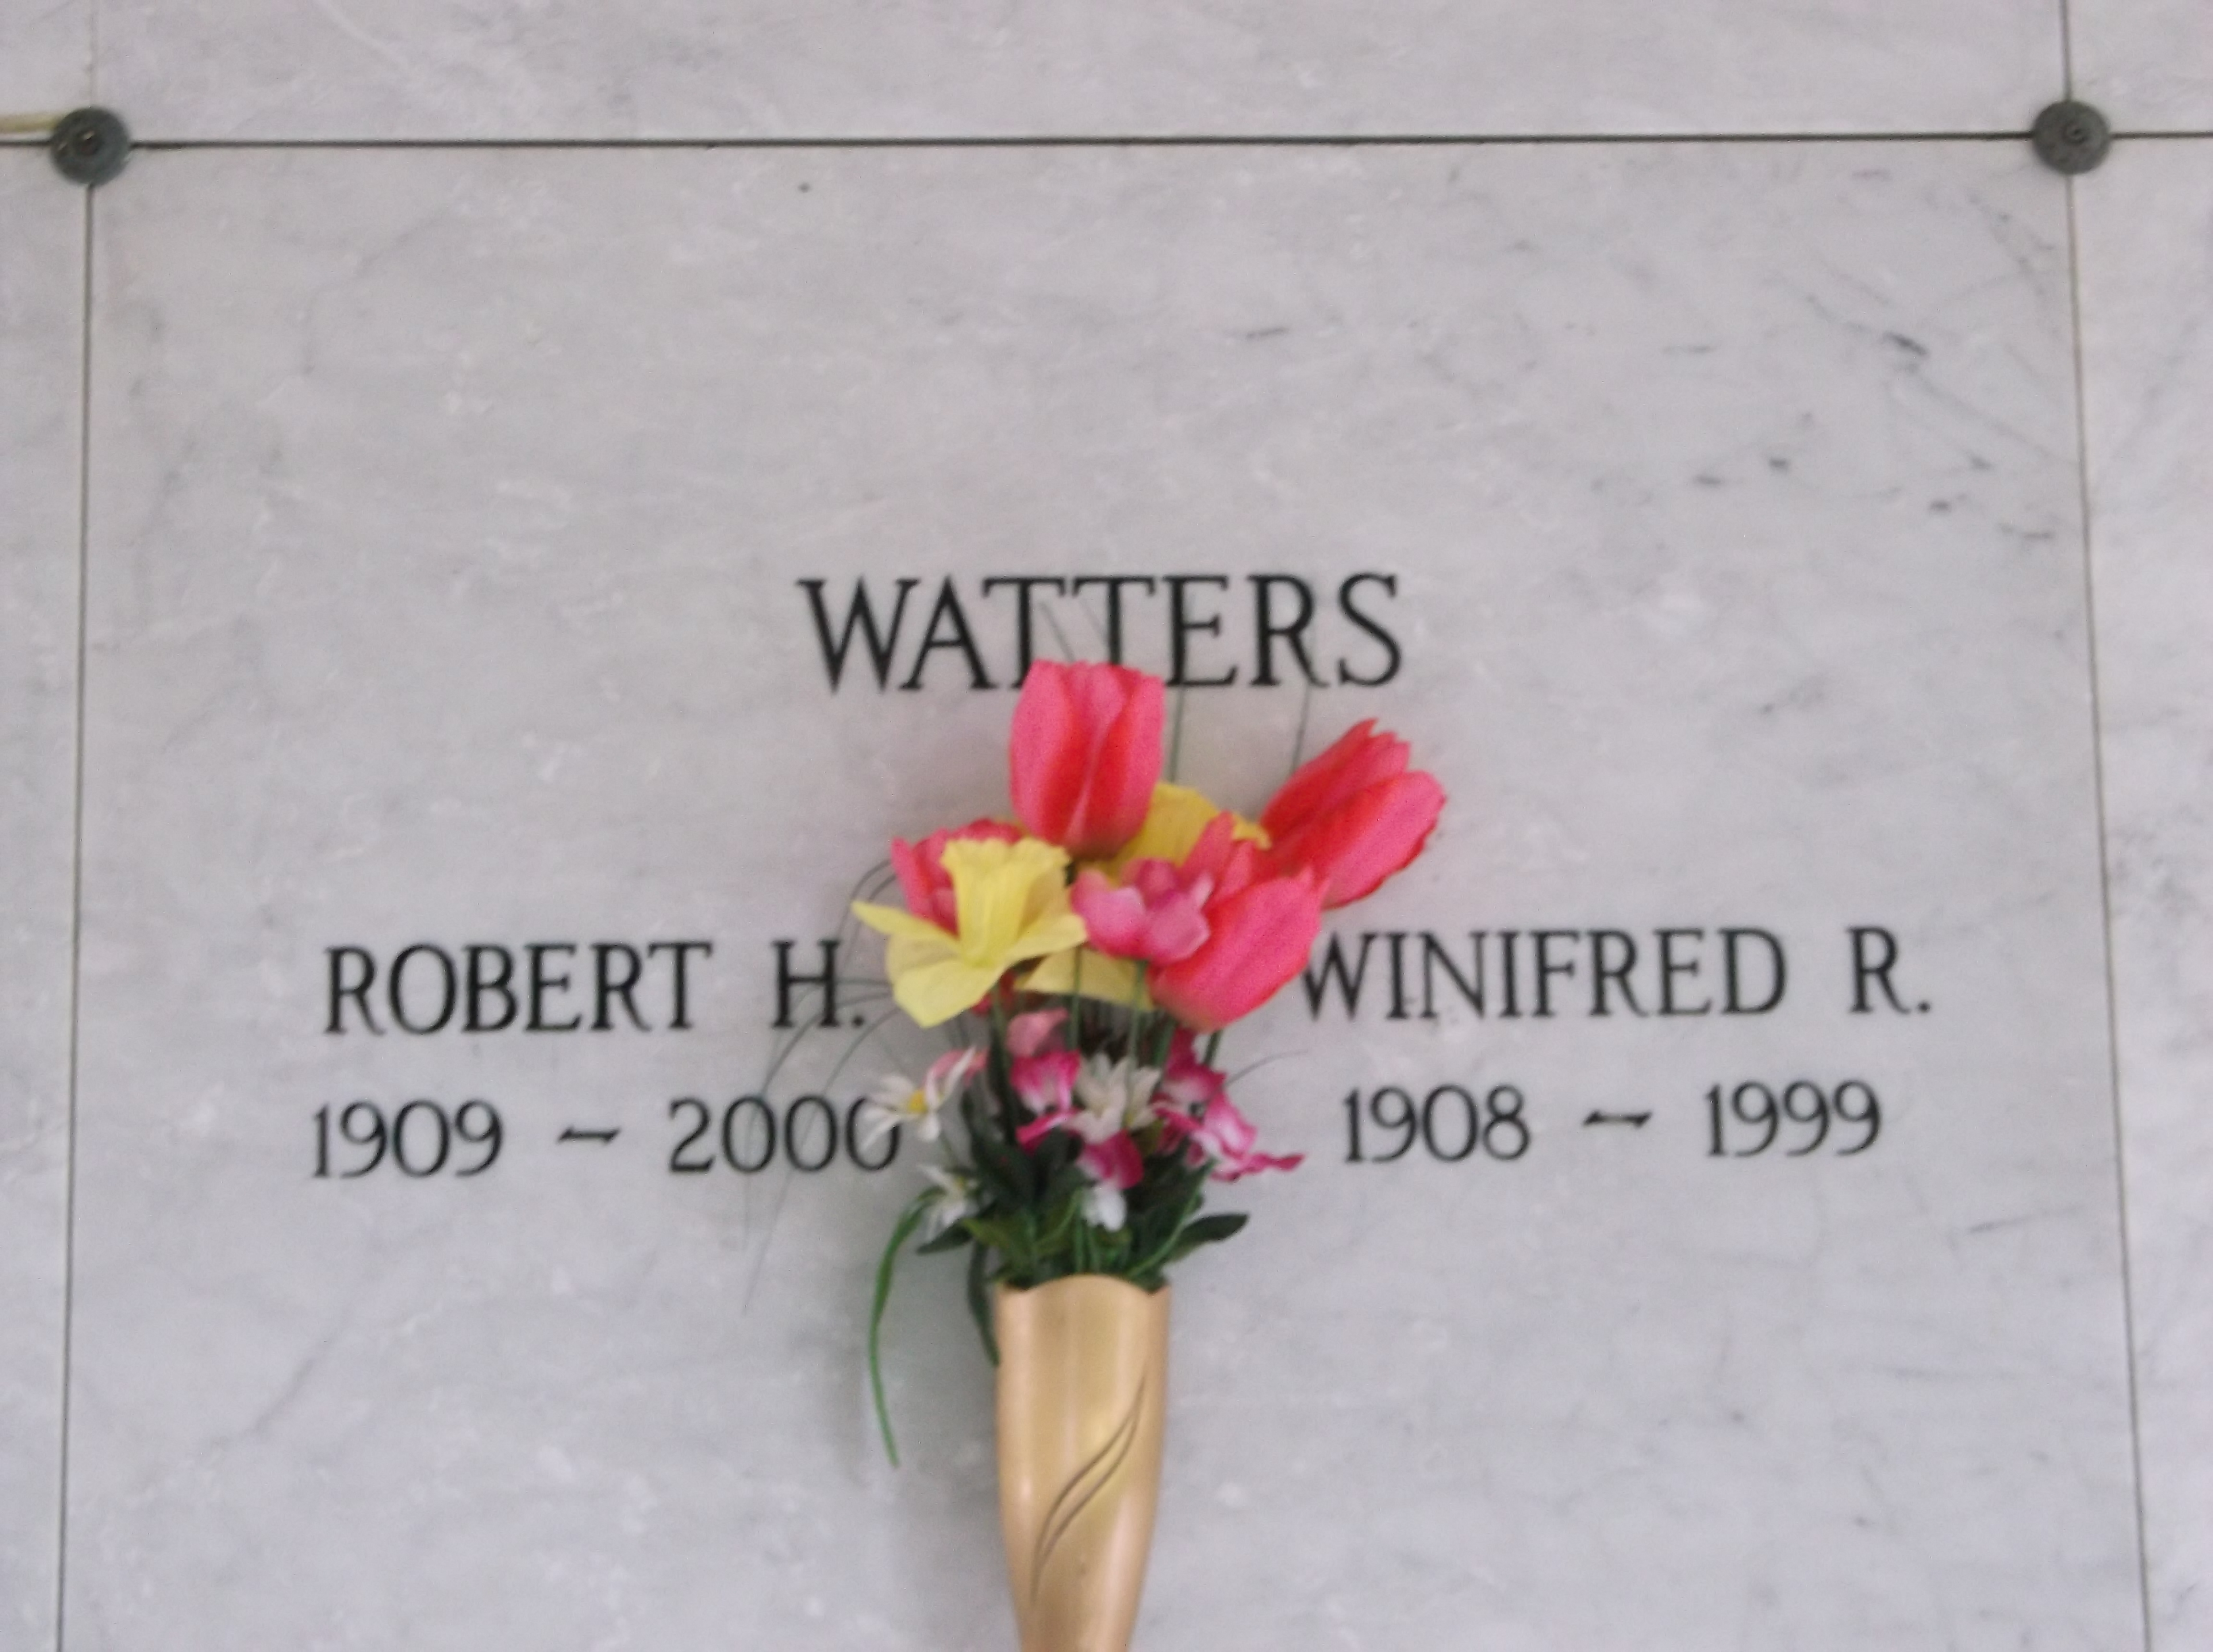 Winifred R Watters